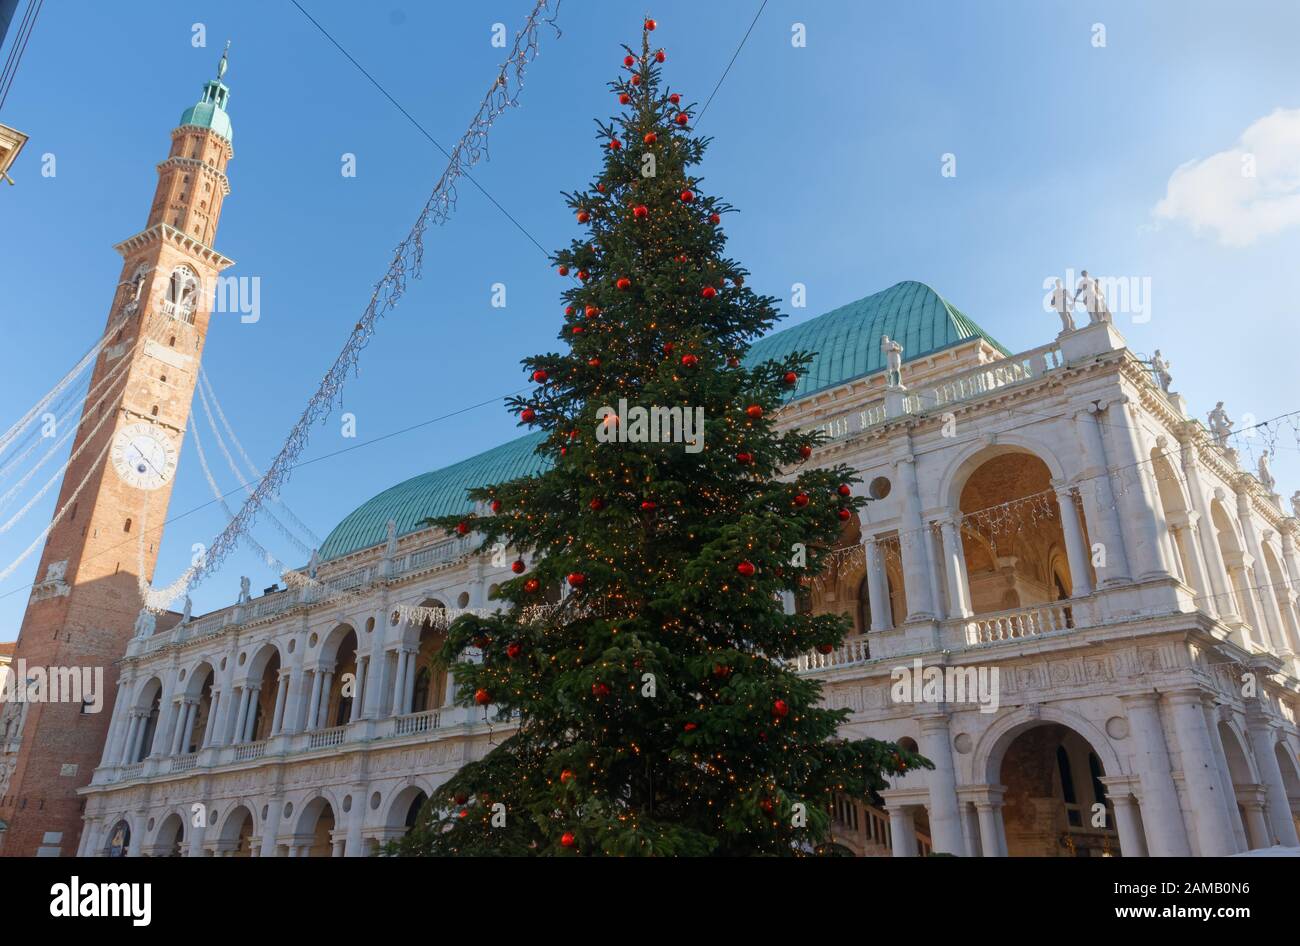 Árbol de Navidad en la Piazza dei Signori en Vicenza, Italia, con la Basílica Palladiana y la torre cívica Bissara en el fondo Foto de stock